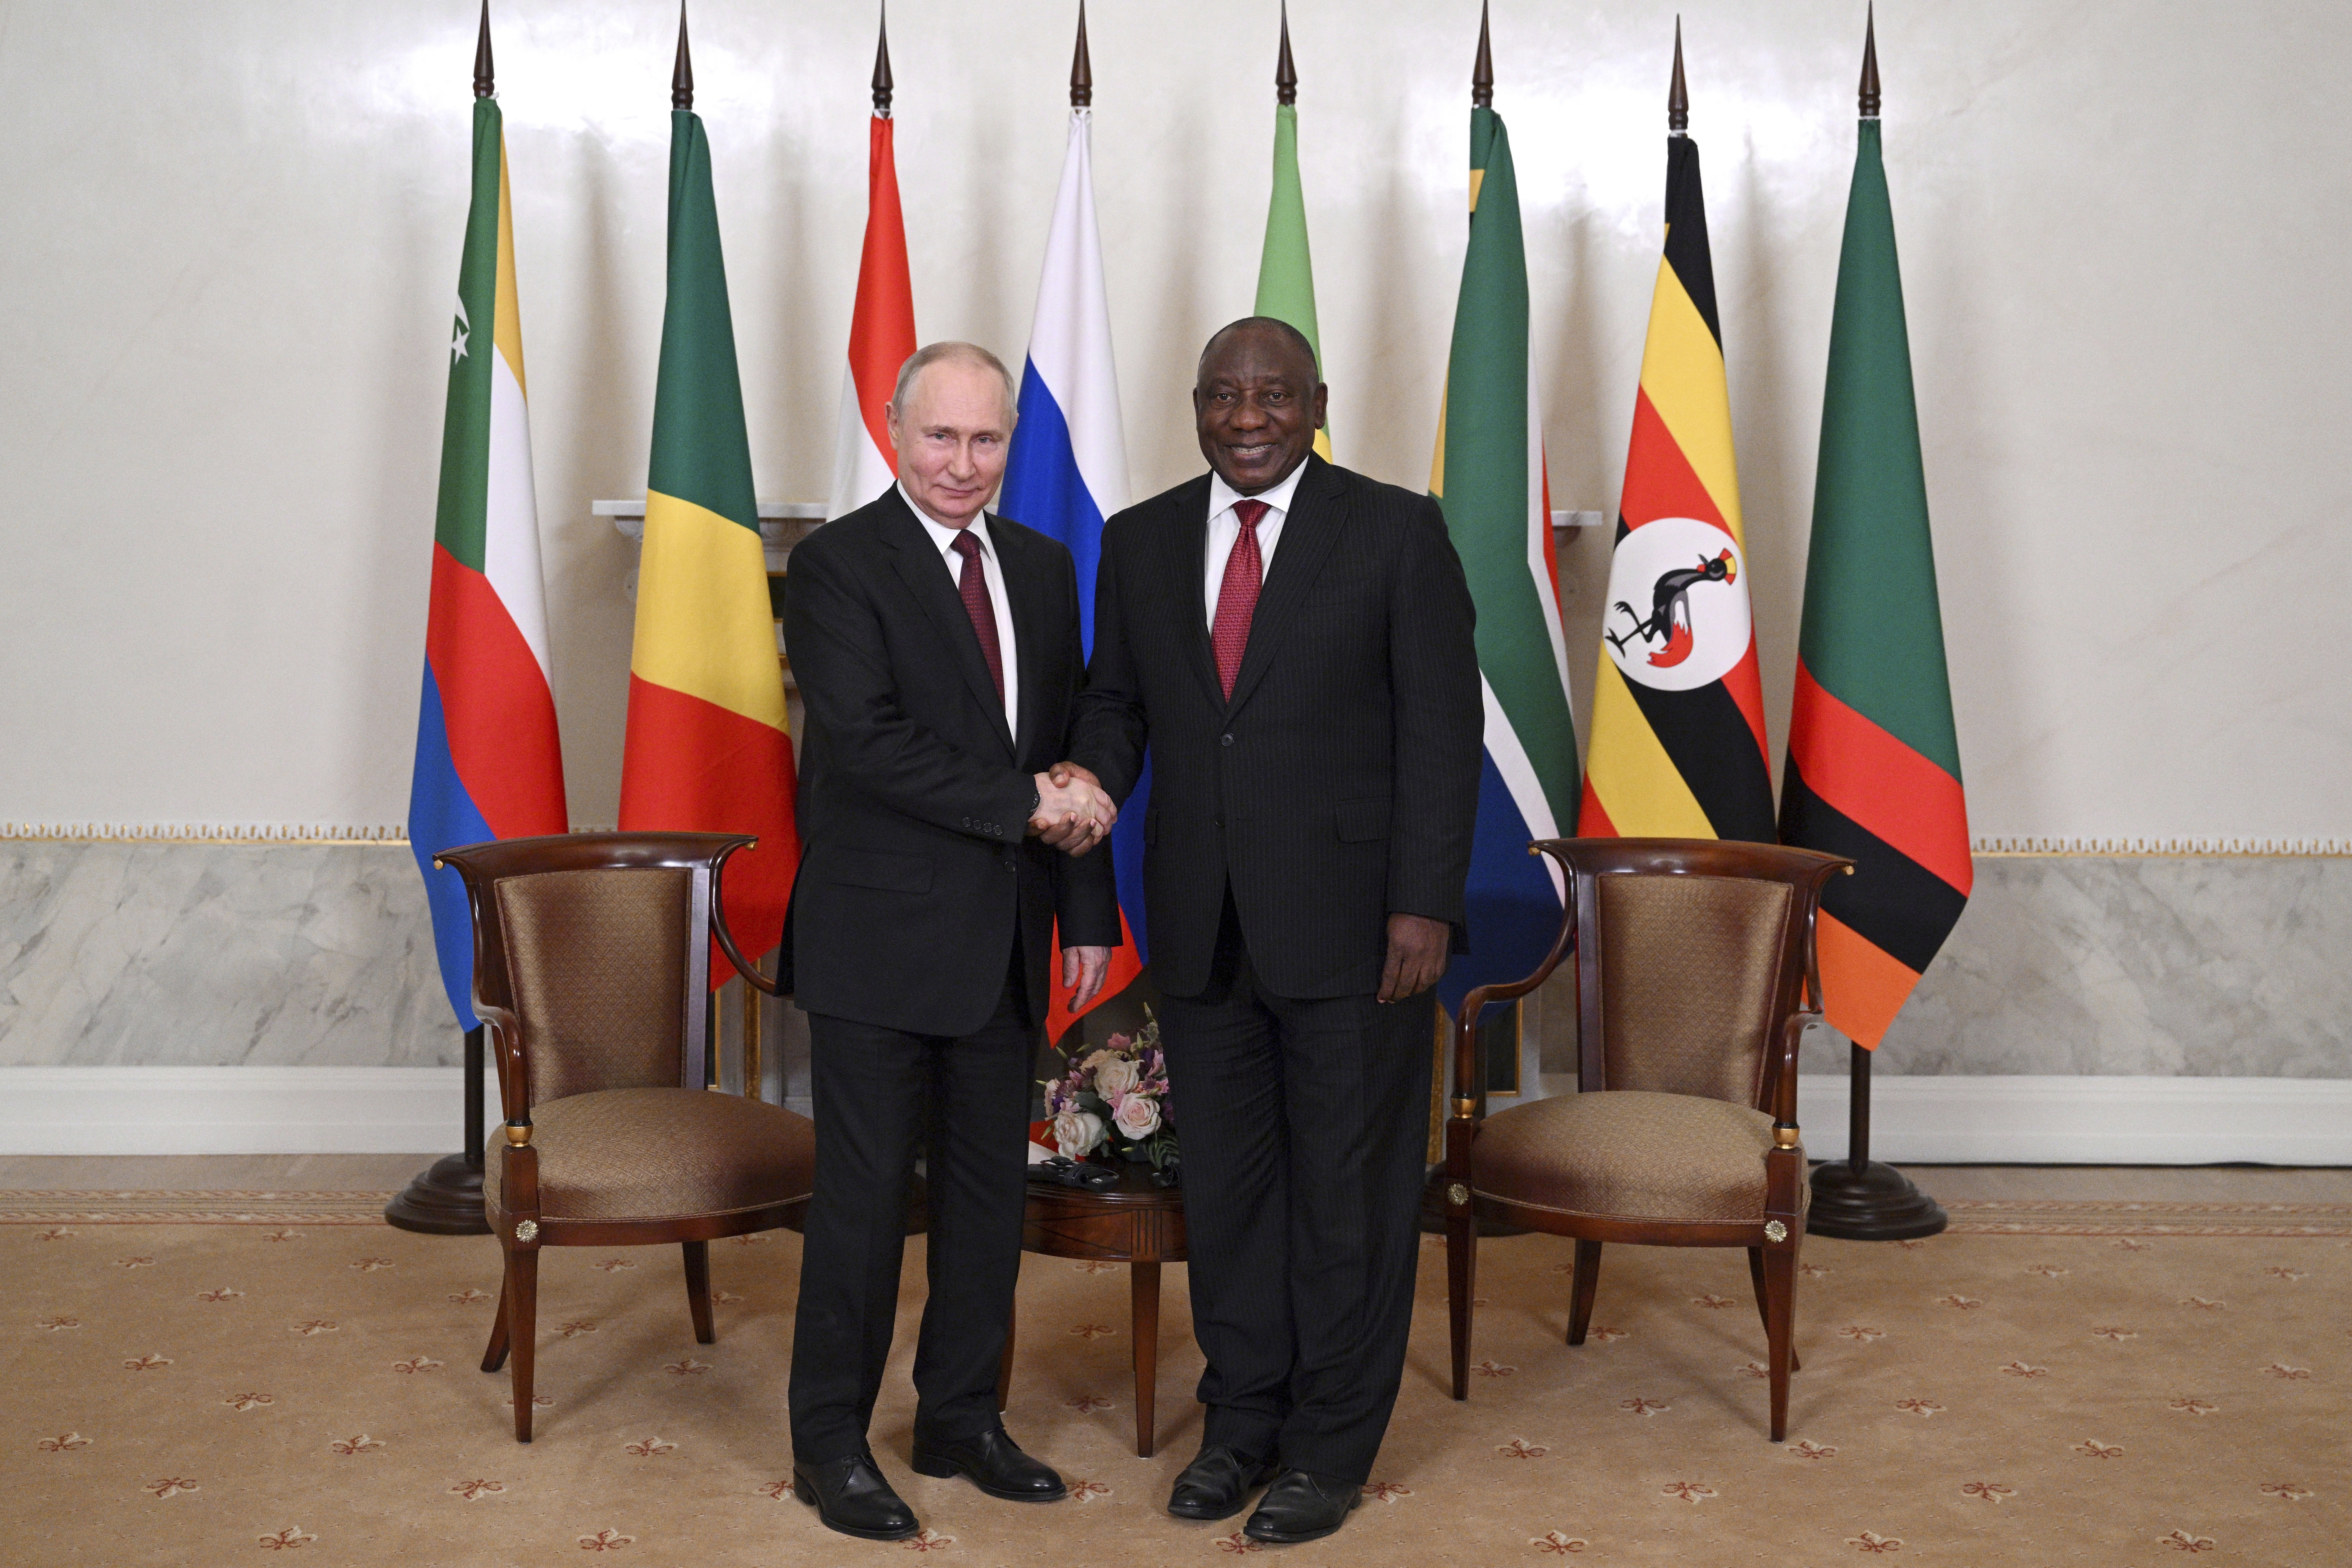 Der russische Präsident Wladimir Putin (links) und der südafrikanische Präsident Cyril Ramaphosa